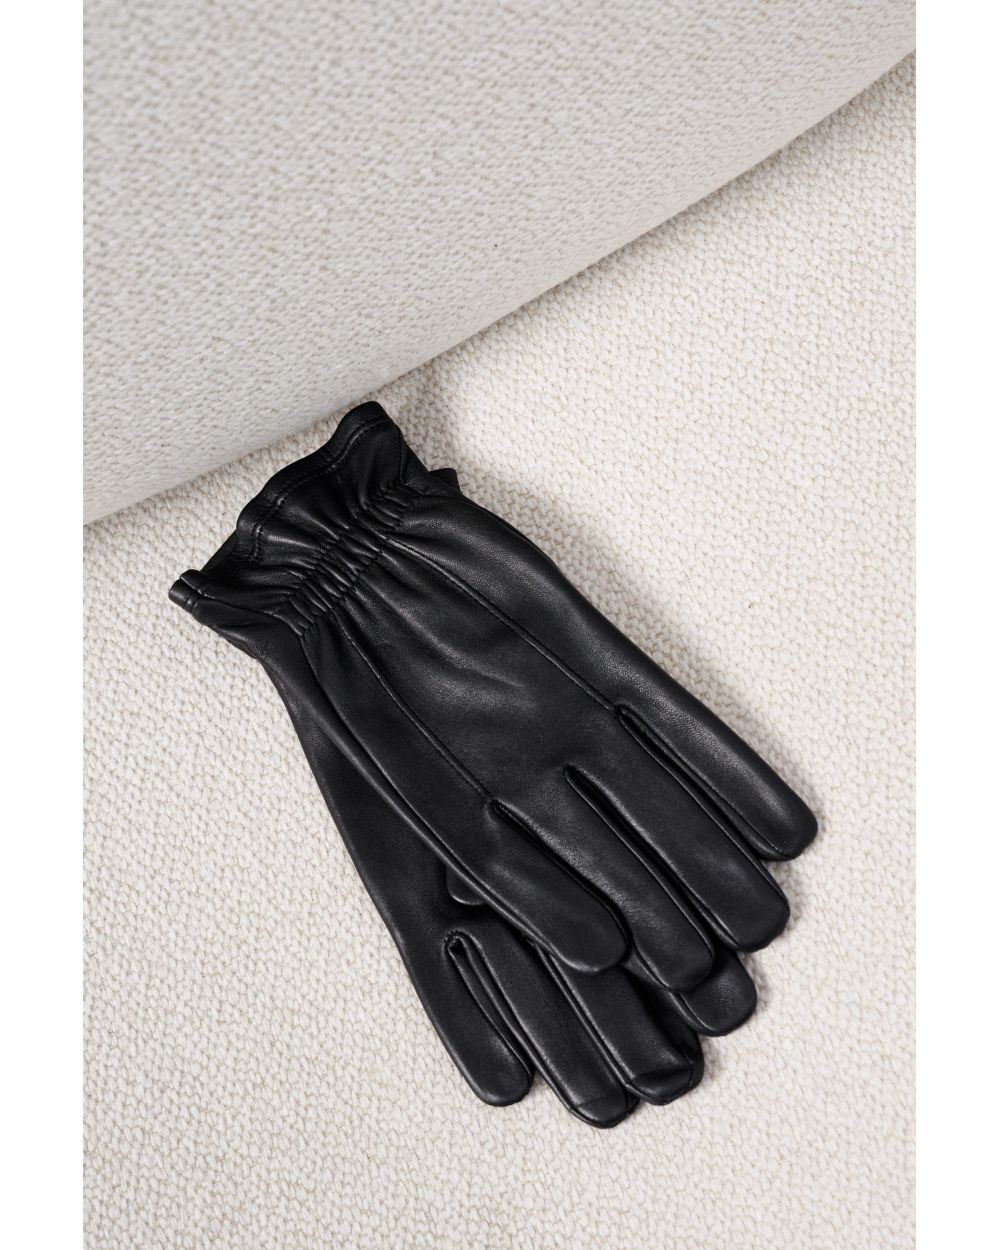 Перчатки мужские кожаные черные на резинке с двумя строчками